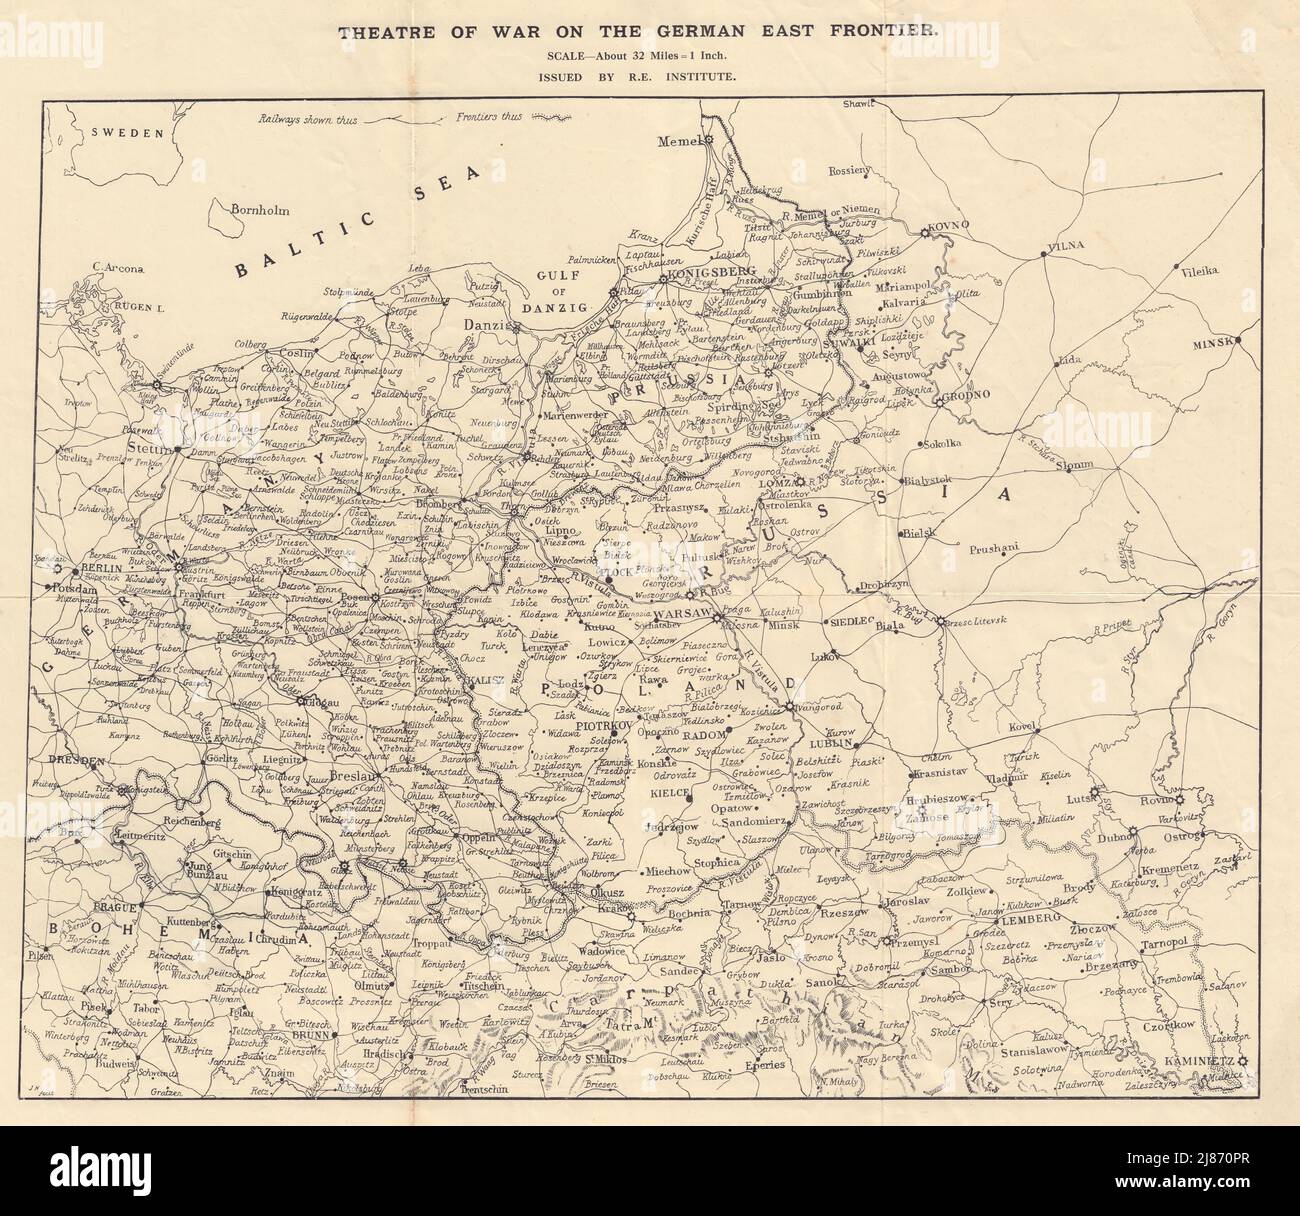 Teatro di guerra sulla frontiera orientale tedesca. Polonia. Mappa Royal Engineers c1914 Foto Stock